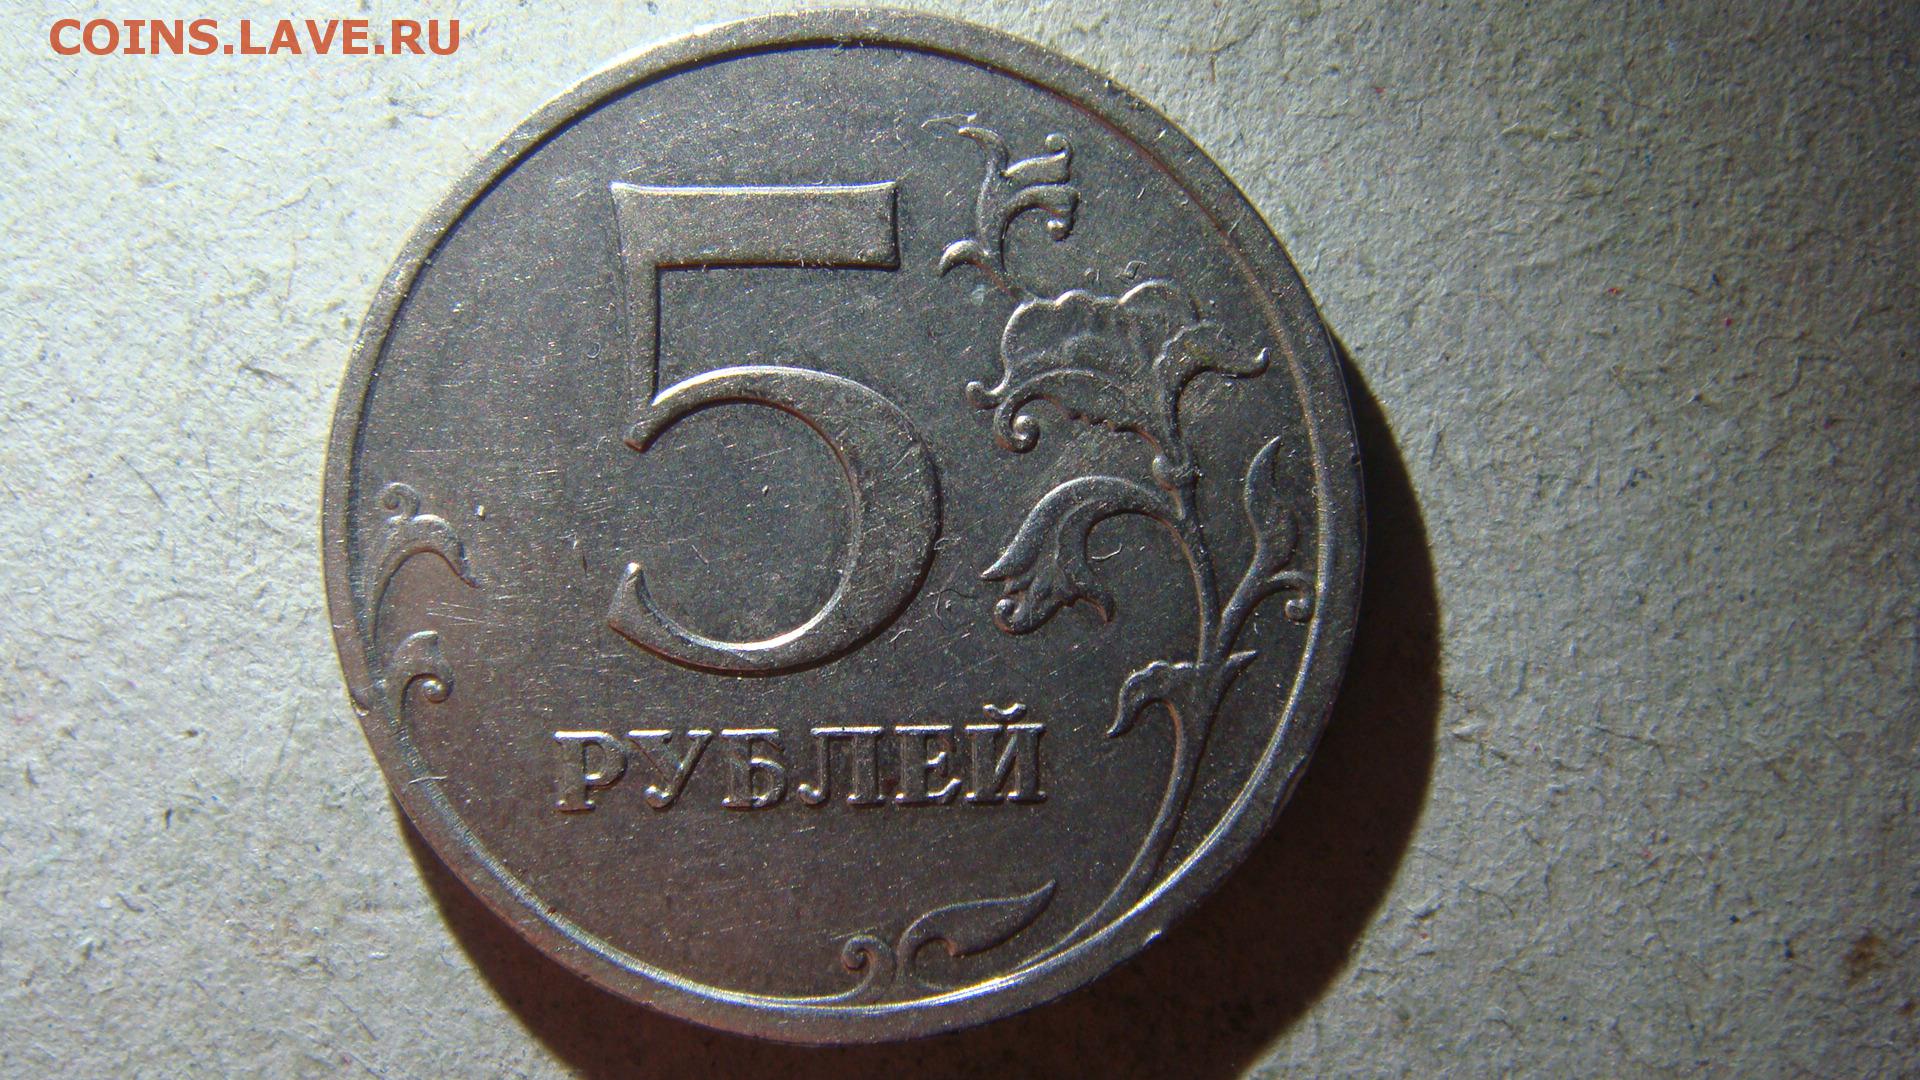 5 рублей 98 года. 5 Рублей 1998 года ММД. Монета 5 рублей 1998 года. 5 Рублей 1998 года. 5 Руб 1998/год ММД.